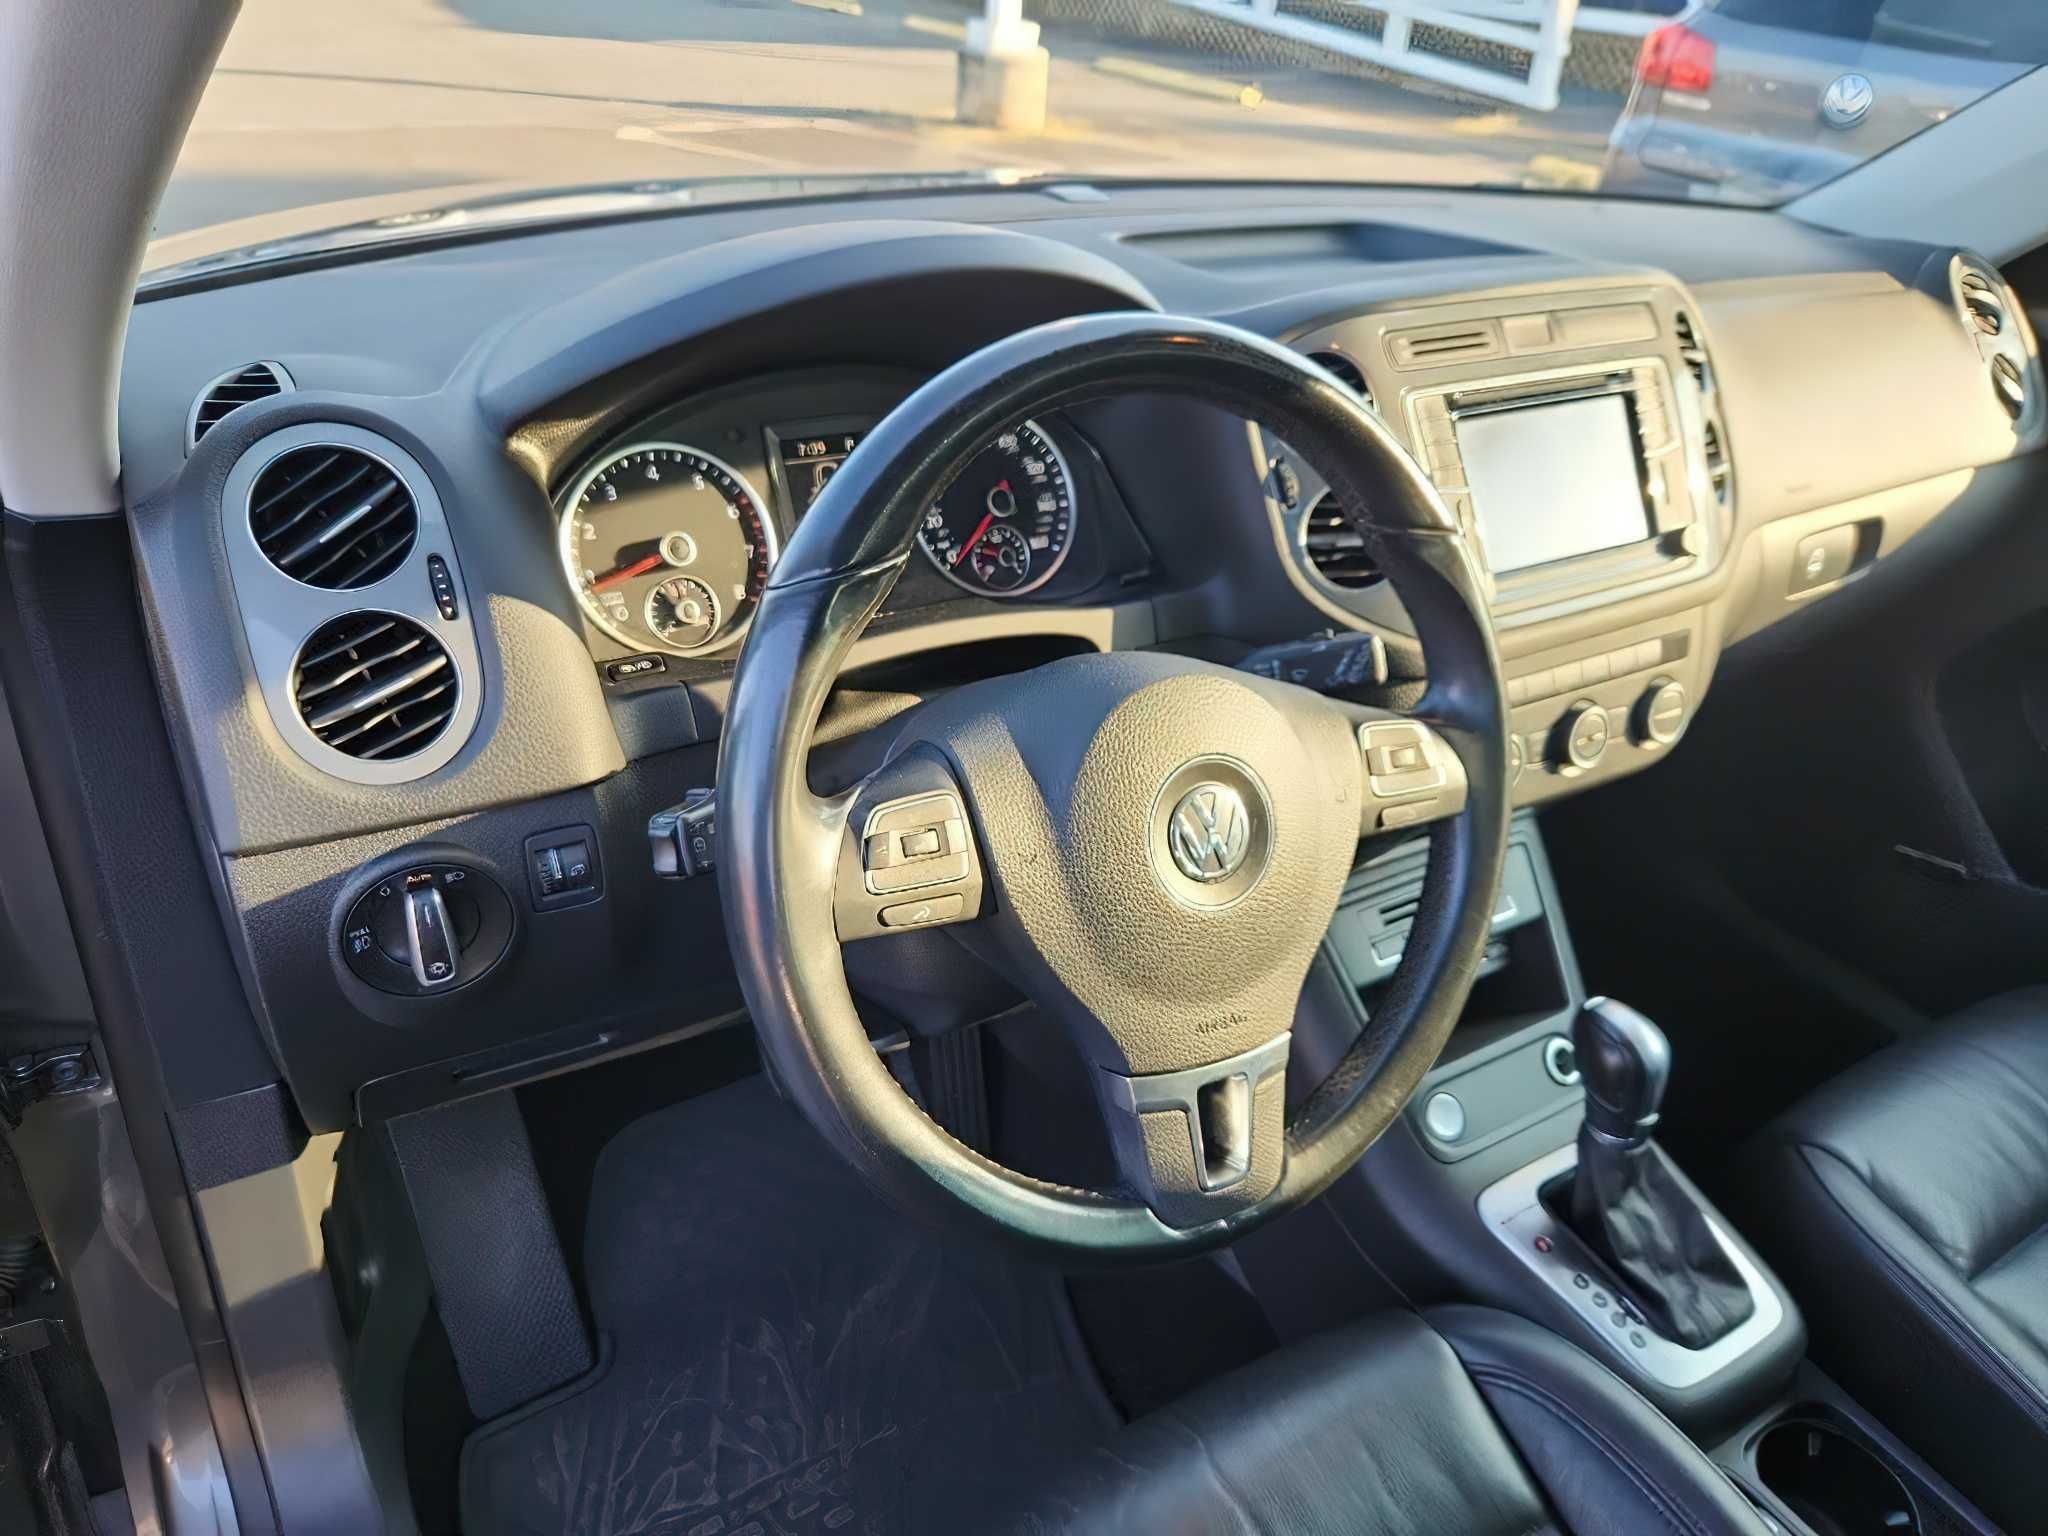 Volkswagen Tiguan 2.0 2016 SEL